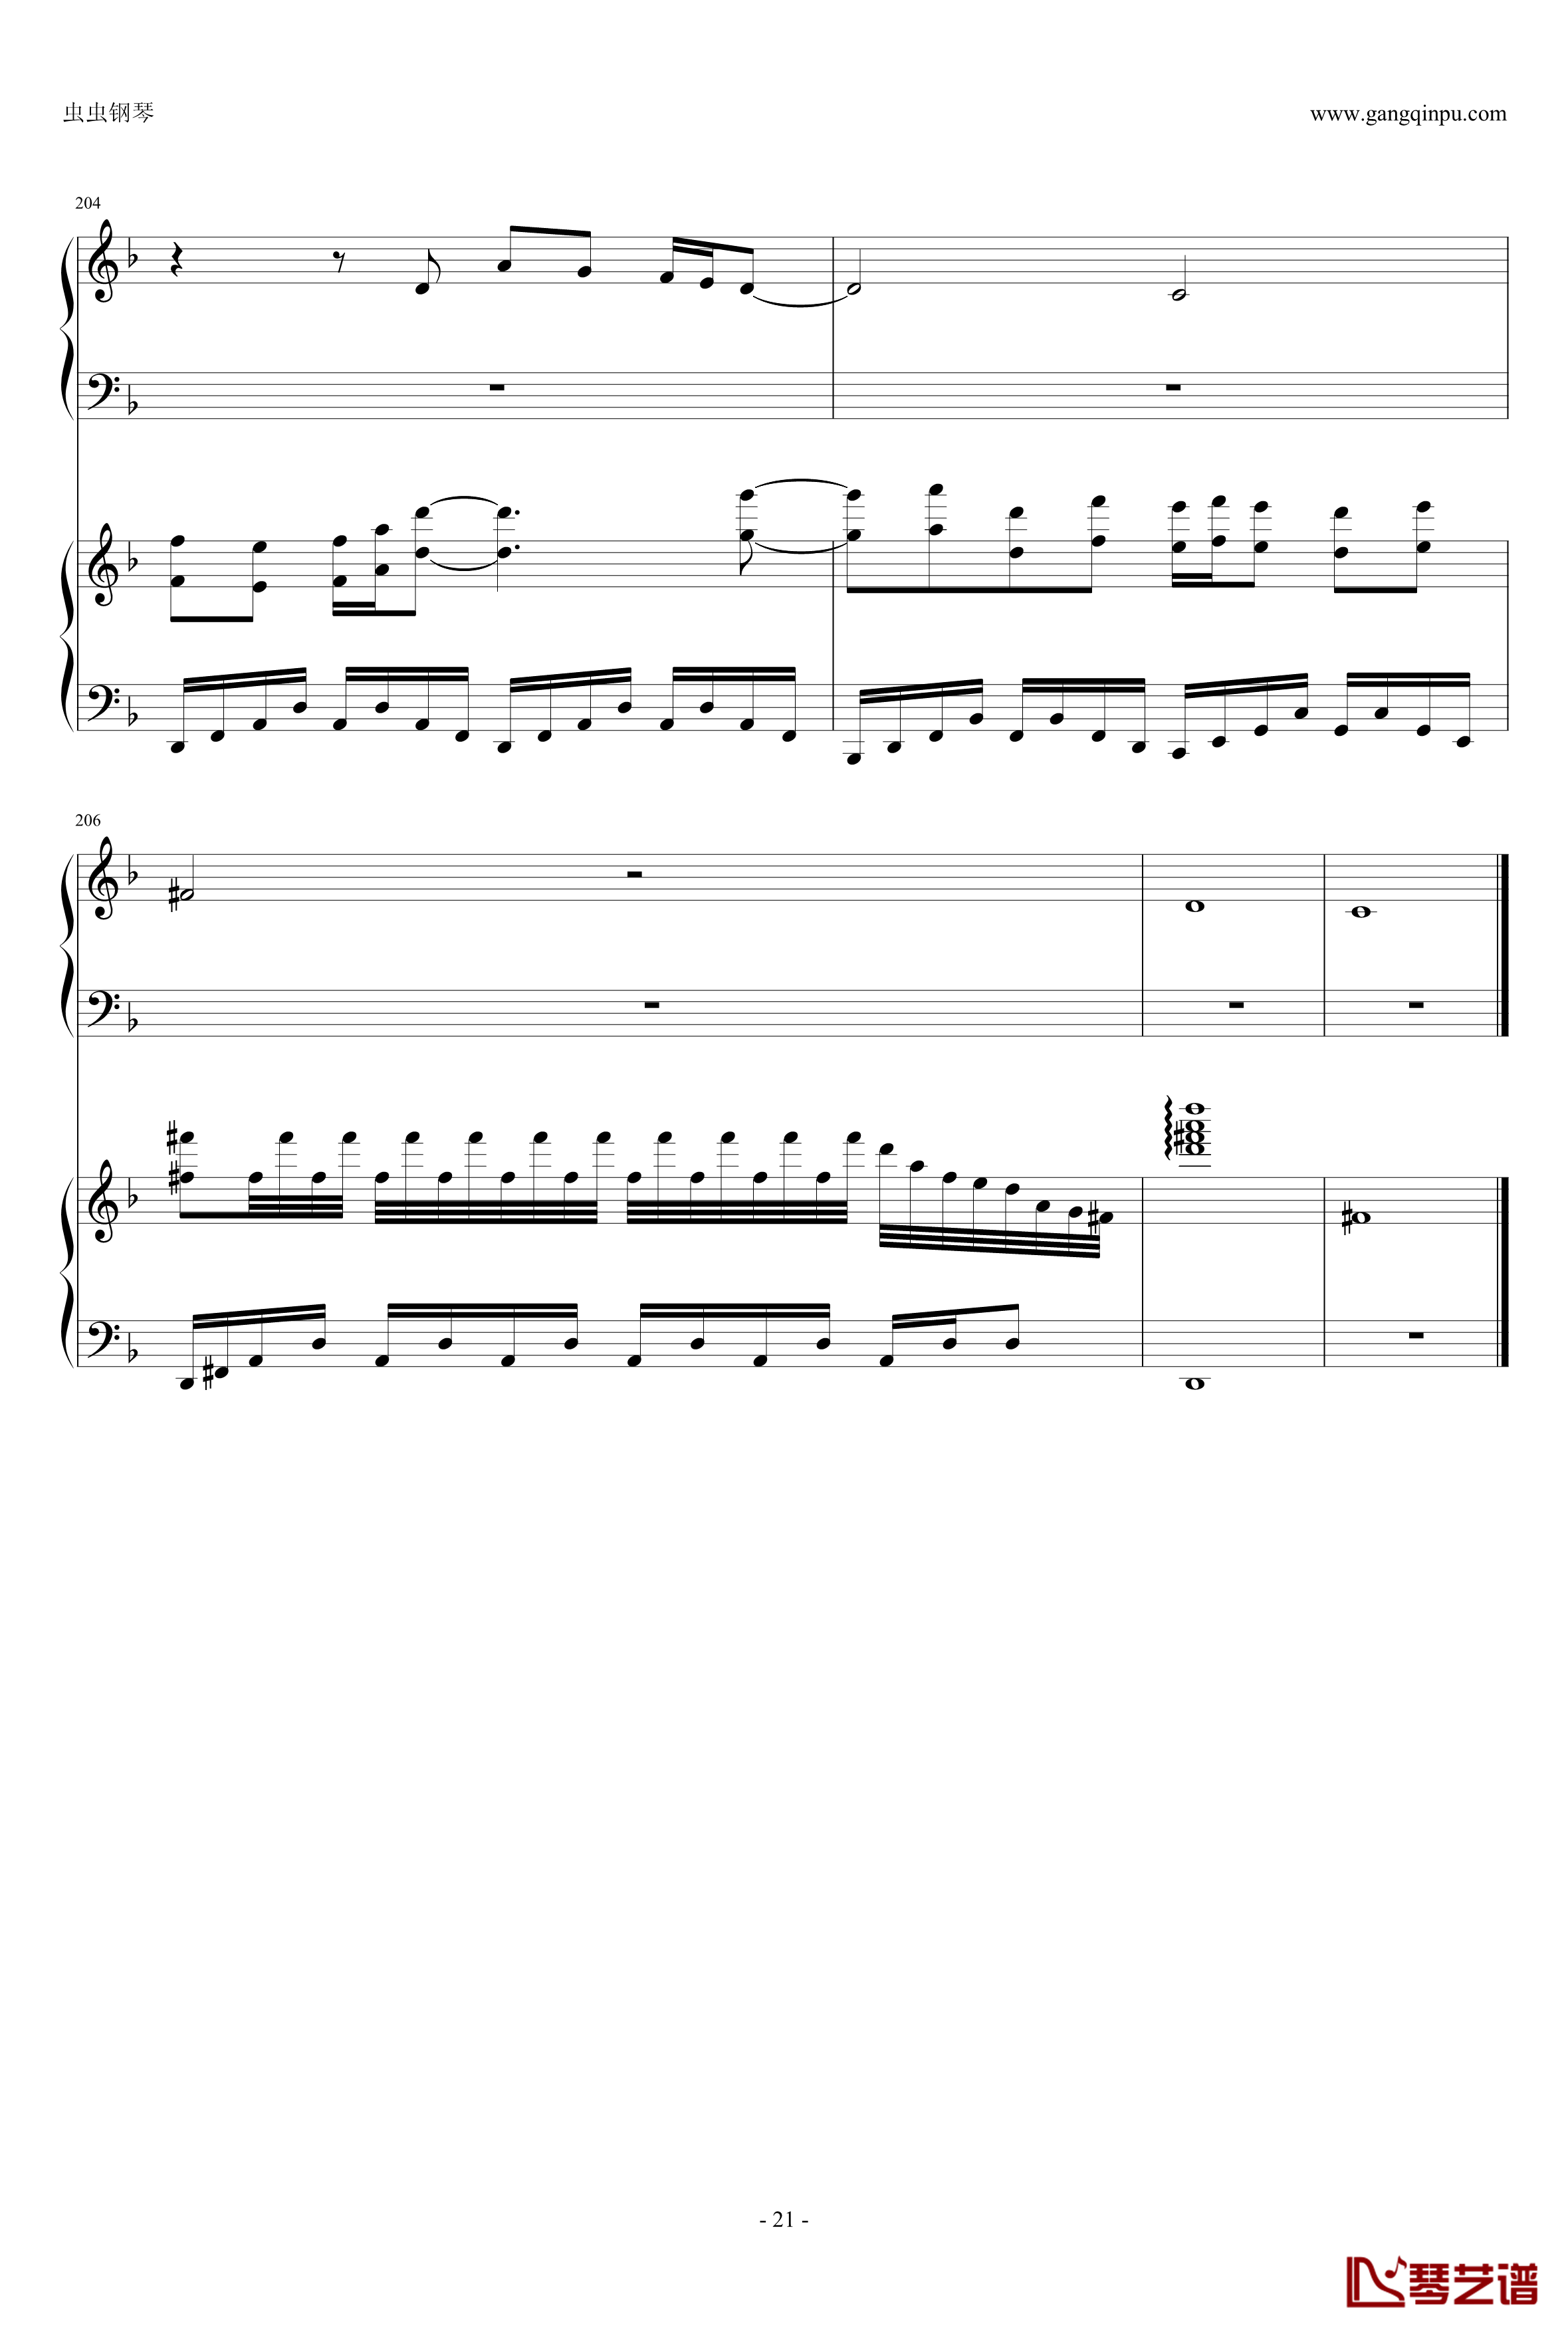 東方連奏曲II Pianoforte钢琴谱-第一部分-东方project21